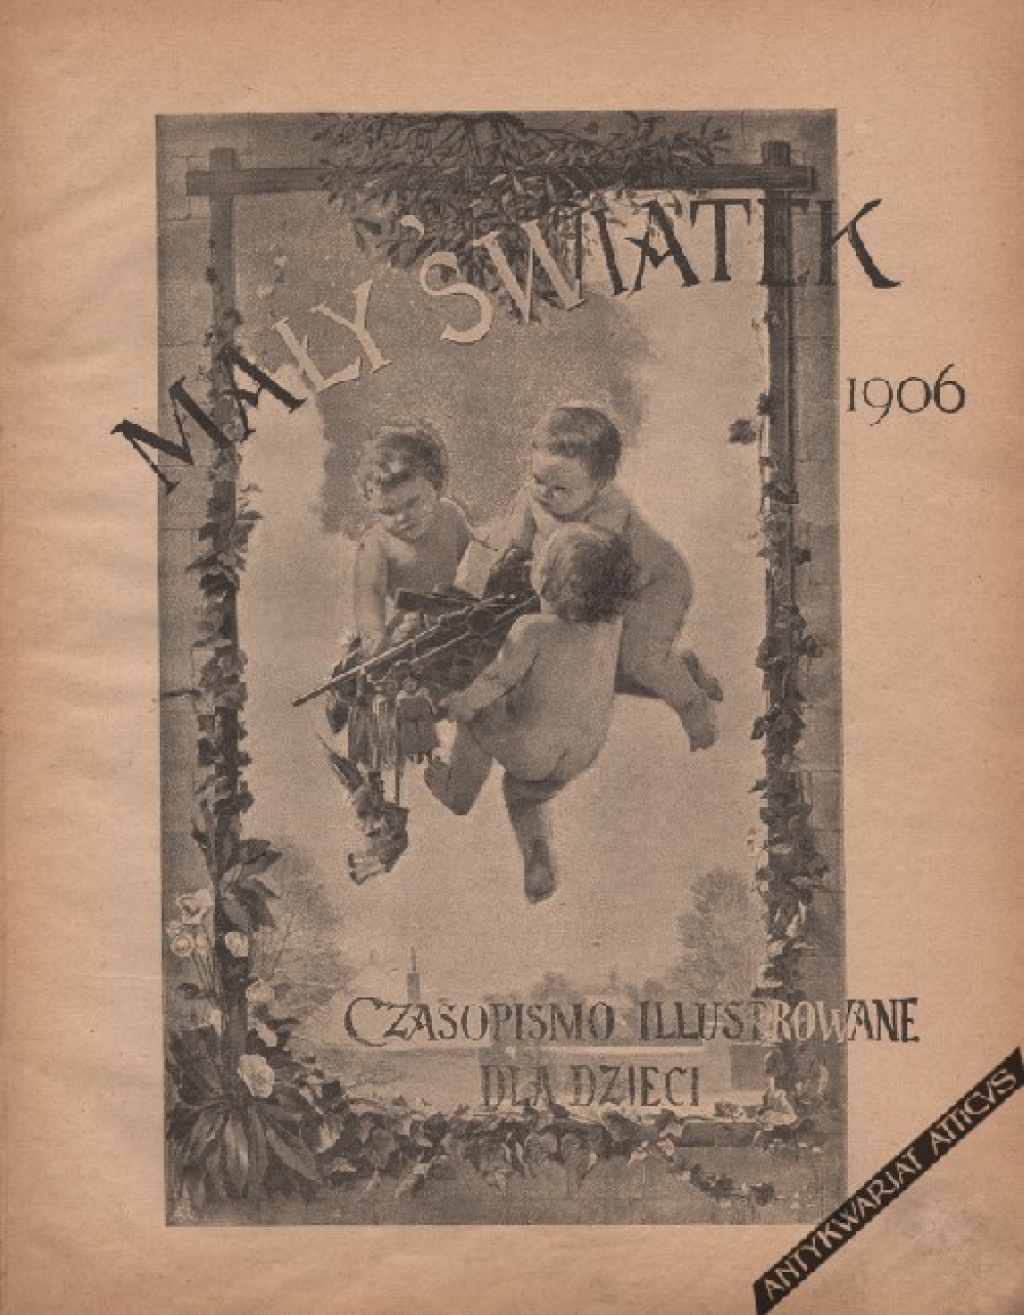 Mały Światek. Czasopismo illustrowane dla dzieci, Rocznik XIX, 1906 r.